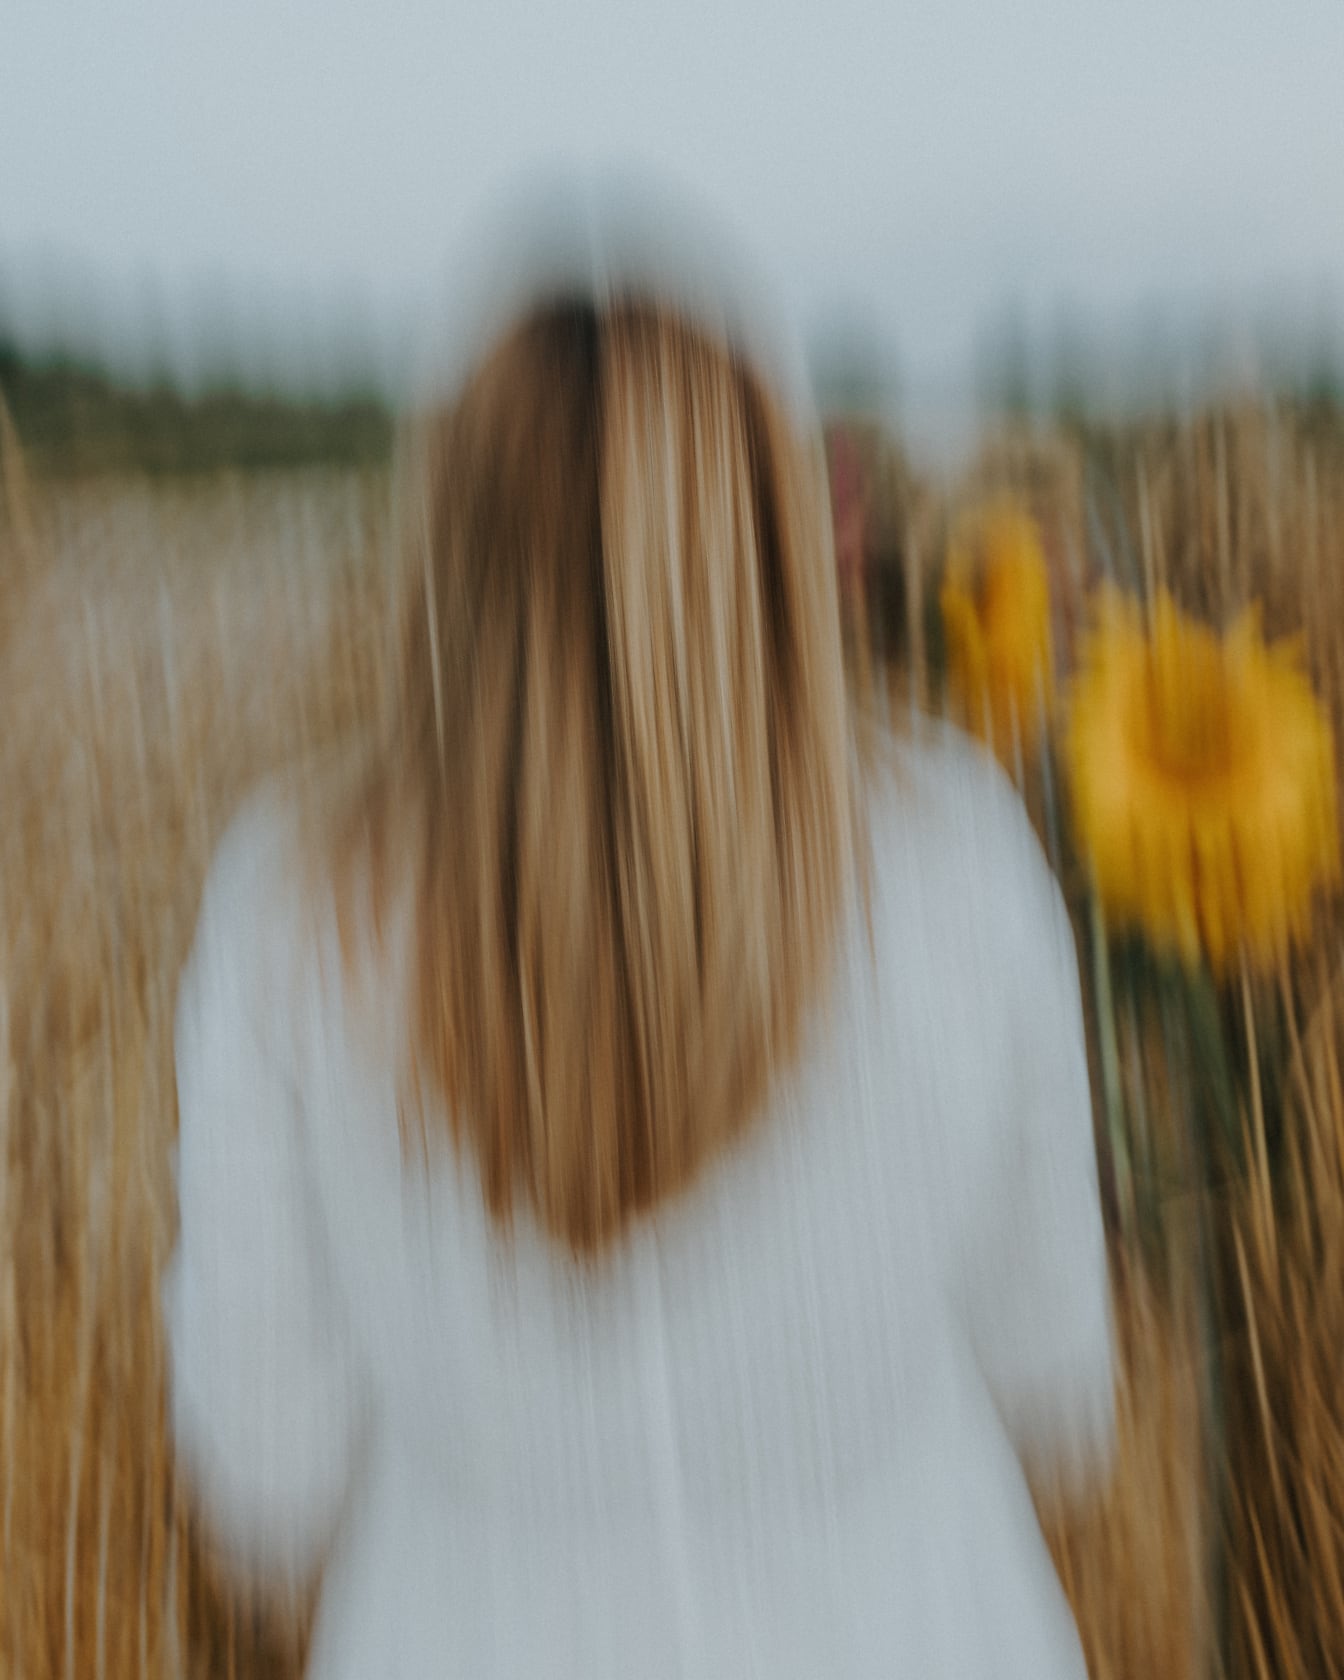 Bevidst sløret foto af kvinde i en hvedemark